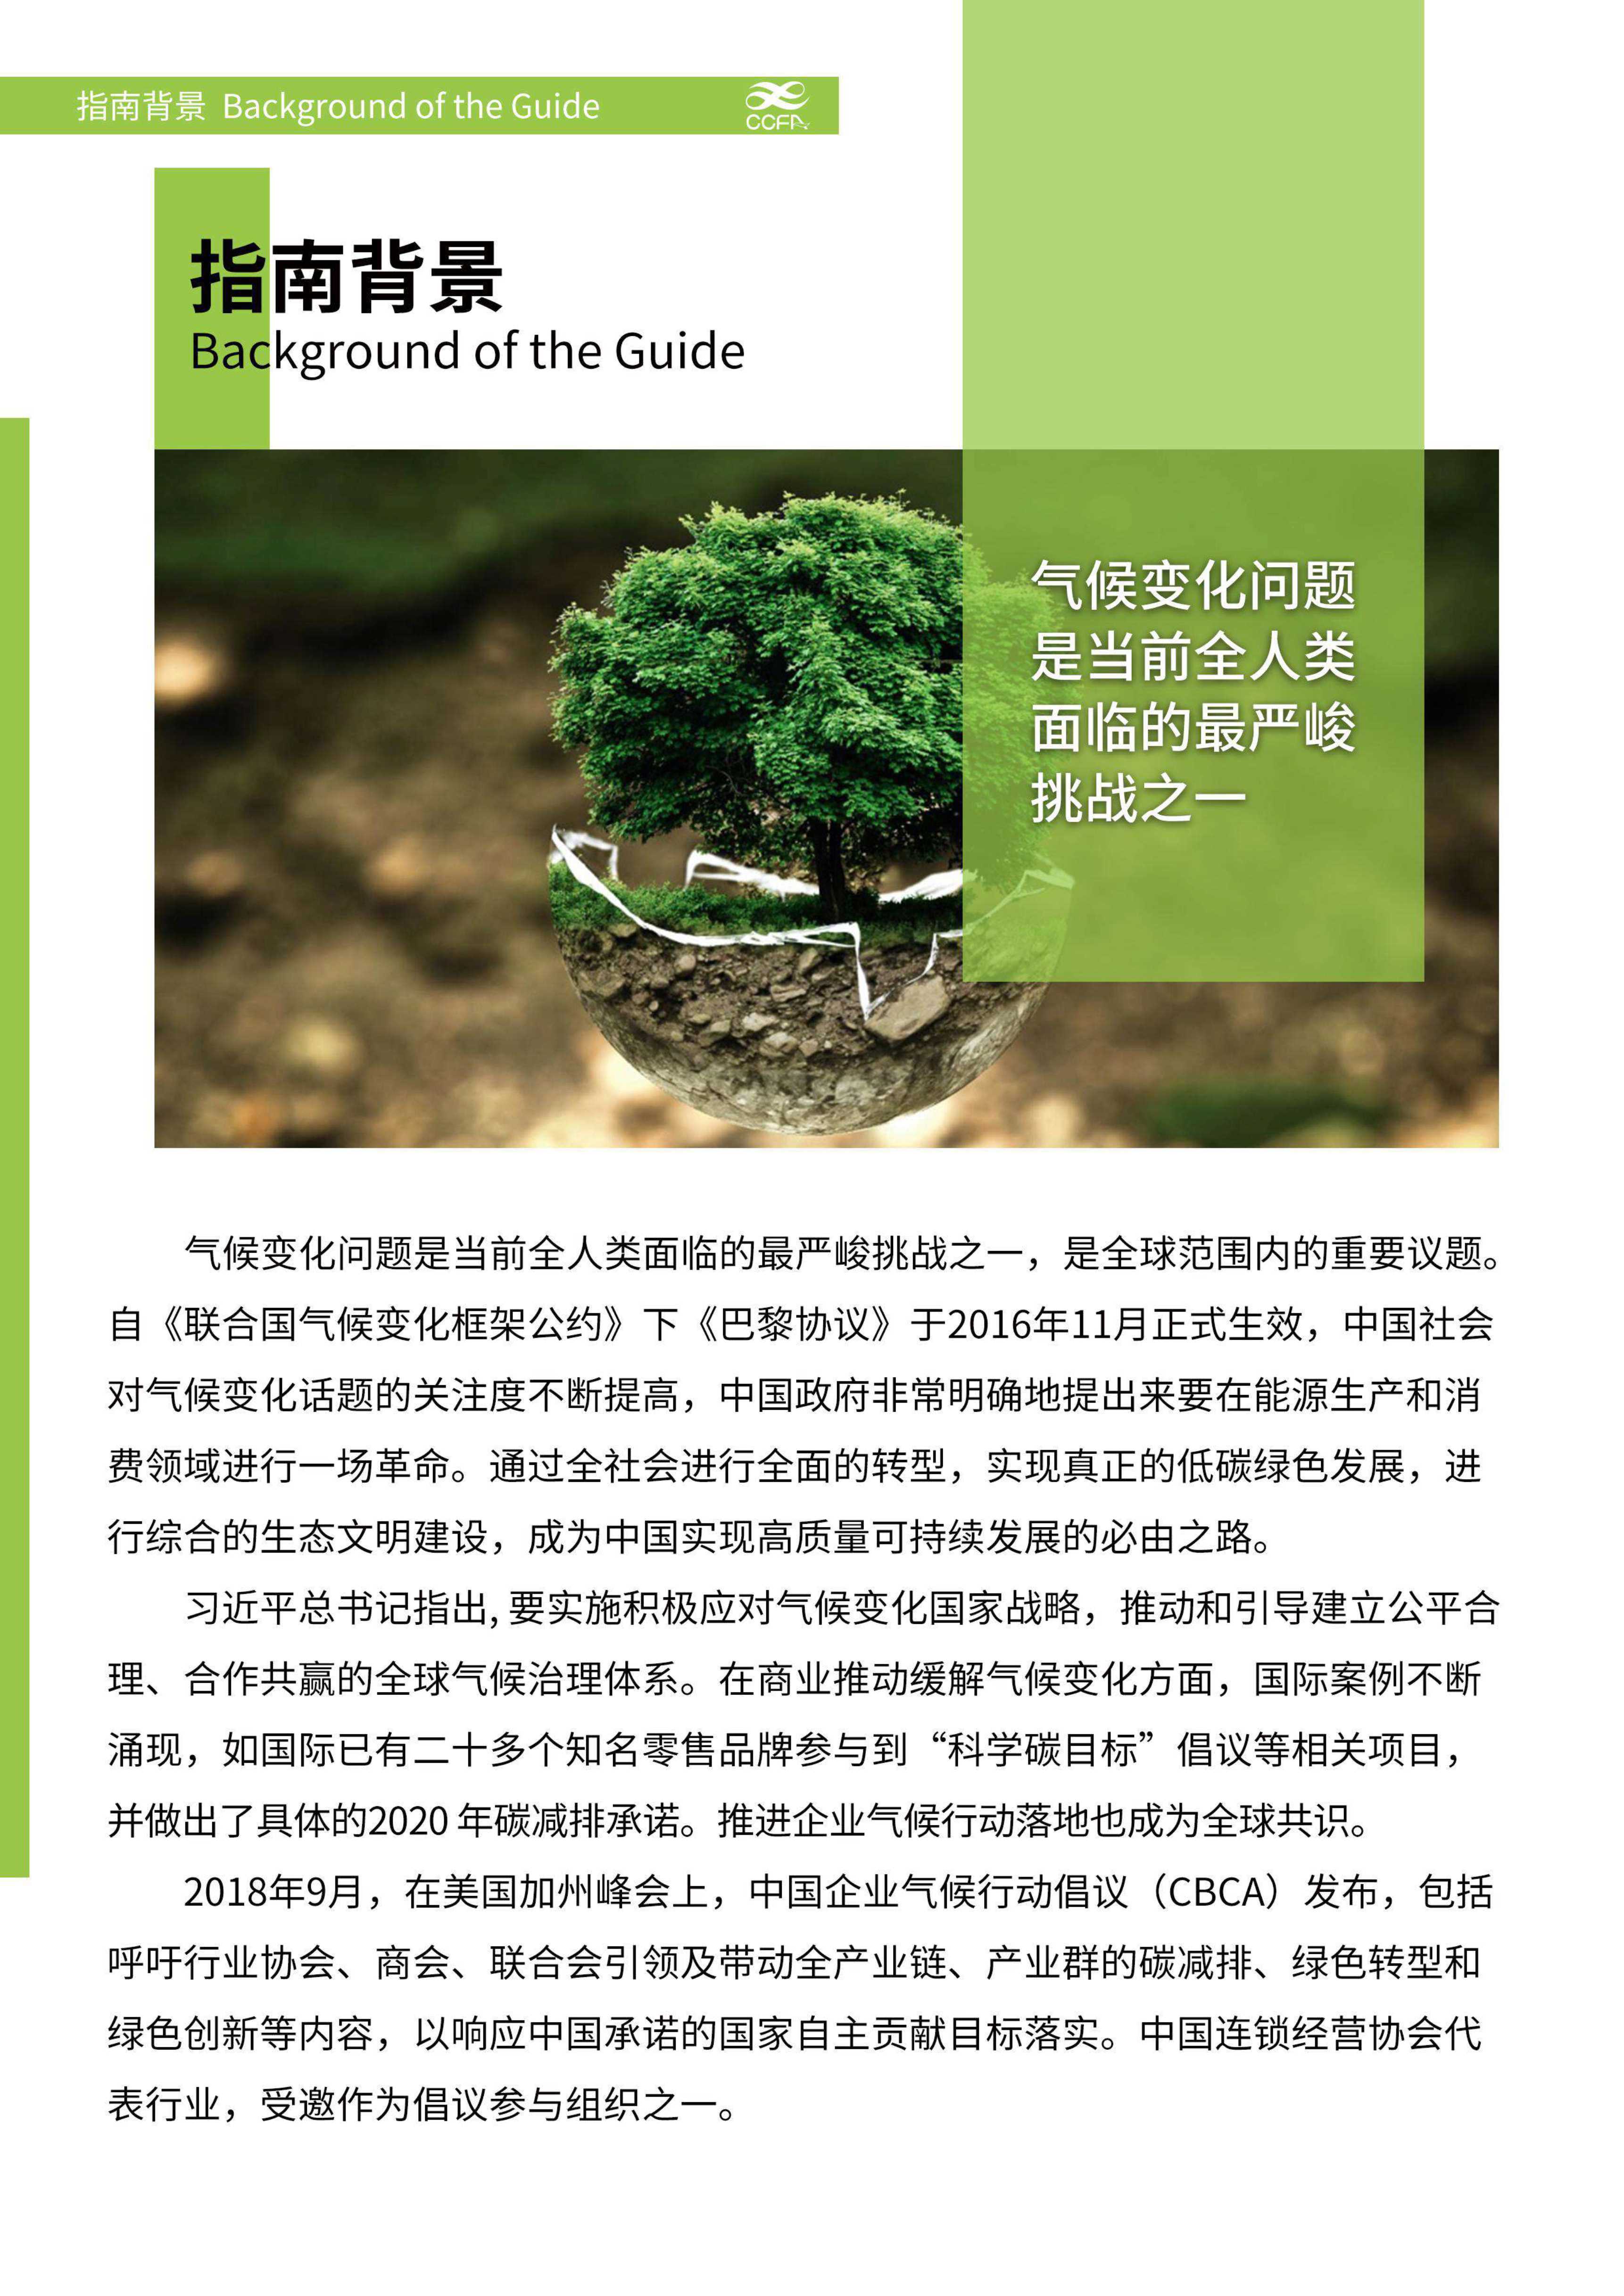 中国连锁经营协会-应对气候变化 推进绿色运营-连锁企业行动指南-2021.12-29页